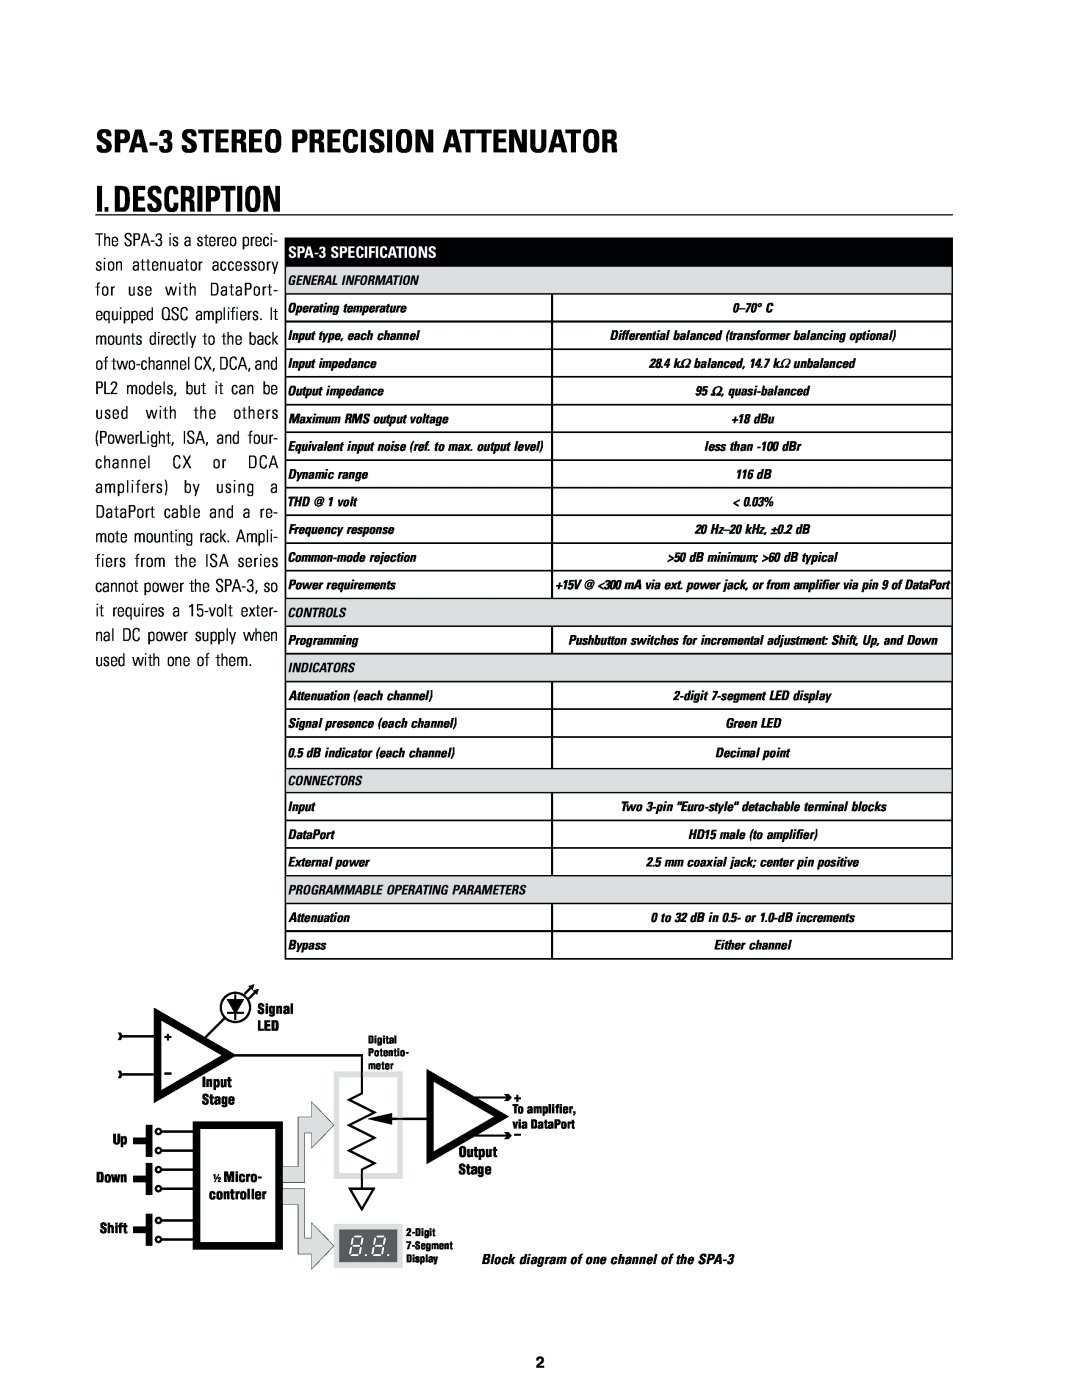 QSC Audio owner manual I.Description, SPA-3STEREO PRECISION ATTENUATOR 